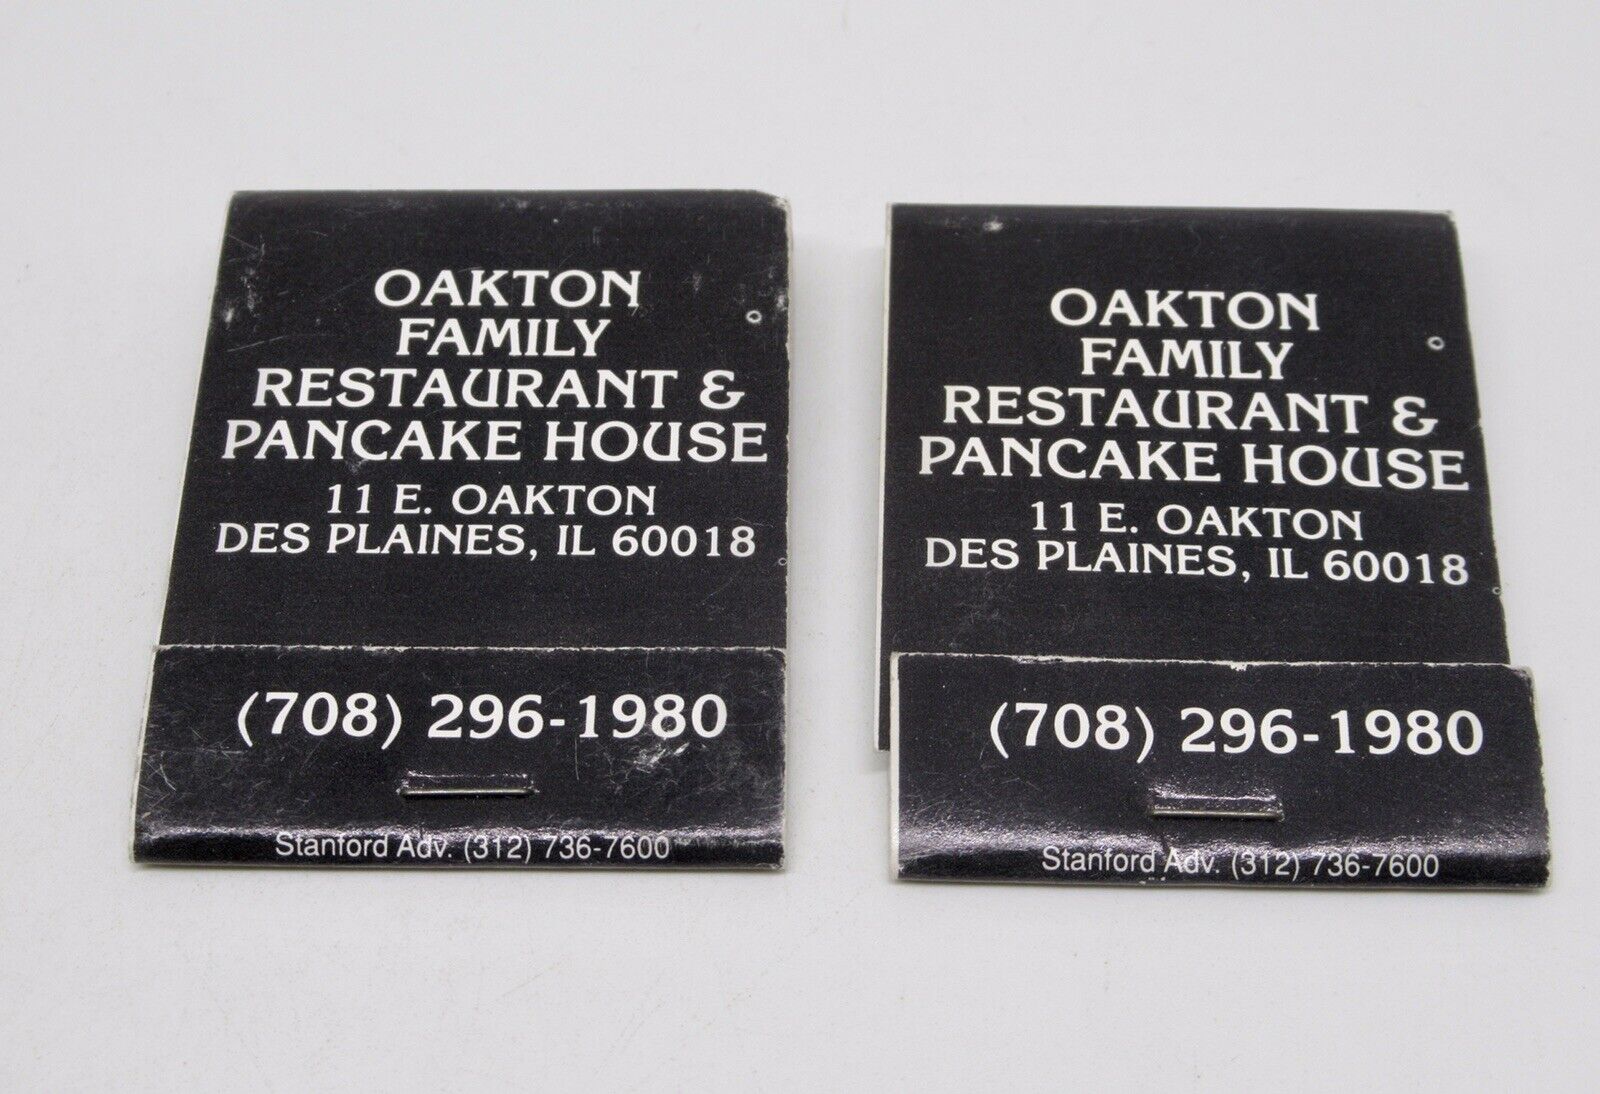 Oakton Family Restaurant & Pancake House Des Plaines Chicago FULL LOT Matchbook 